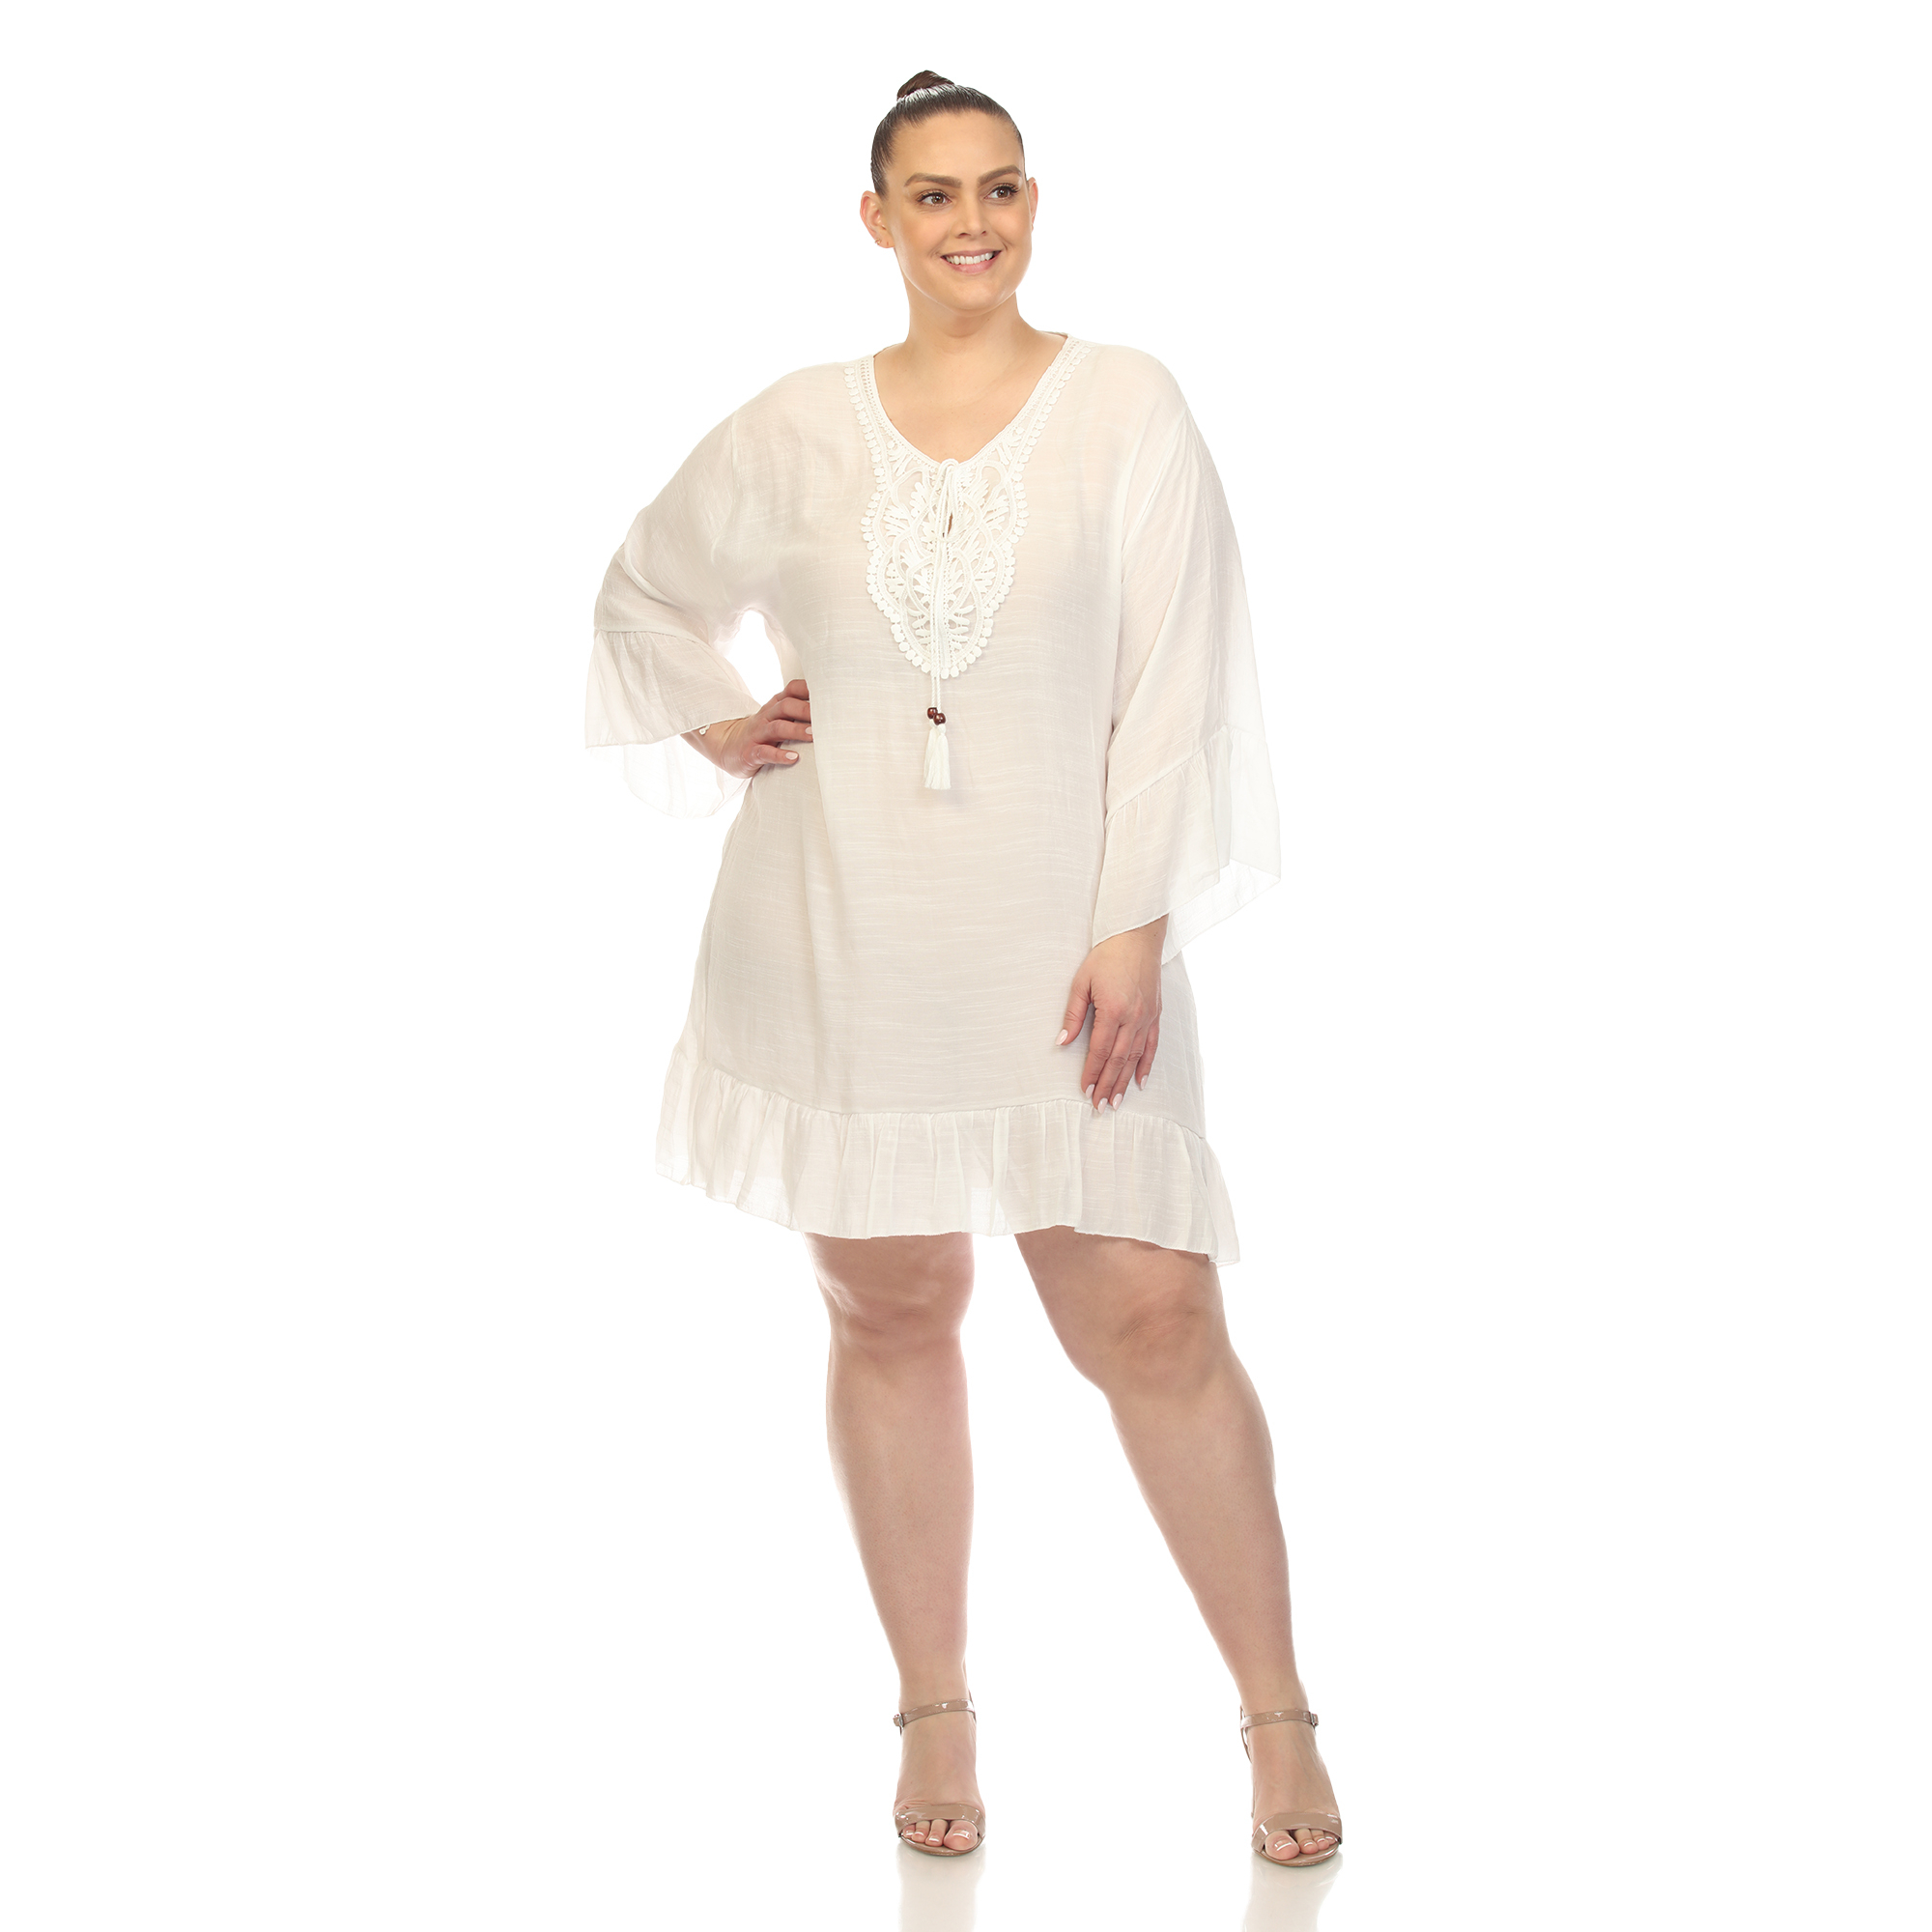 White Mark Women's Sheer Crochet Cover Up Dress - White, One Size (Missy)